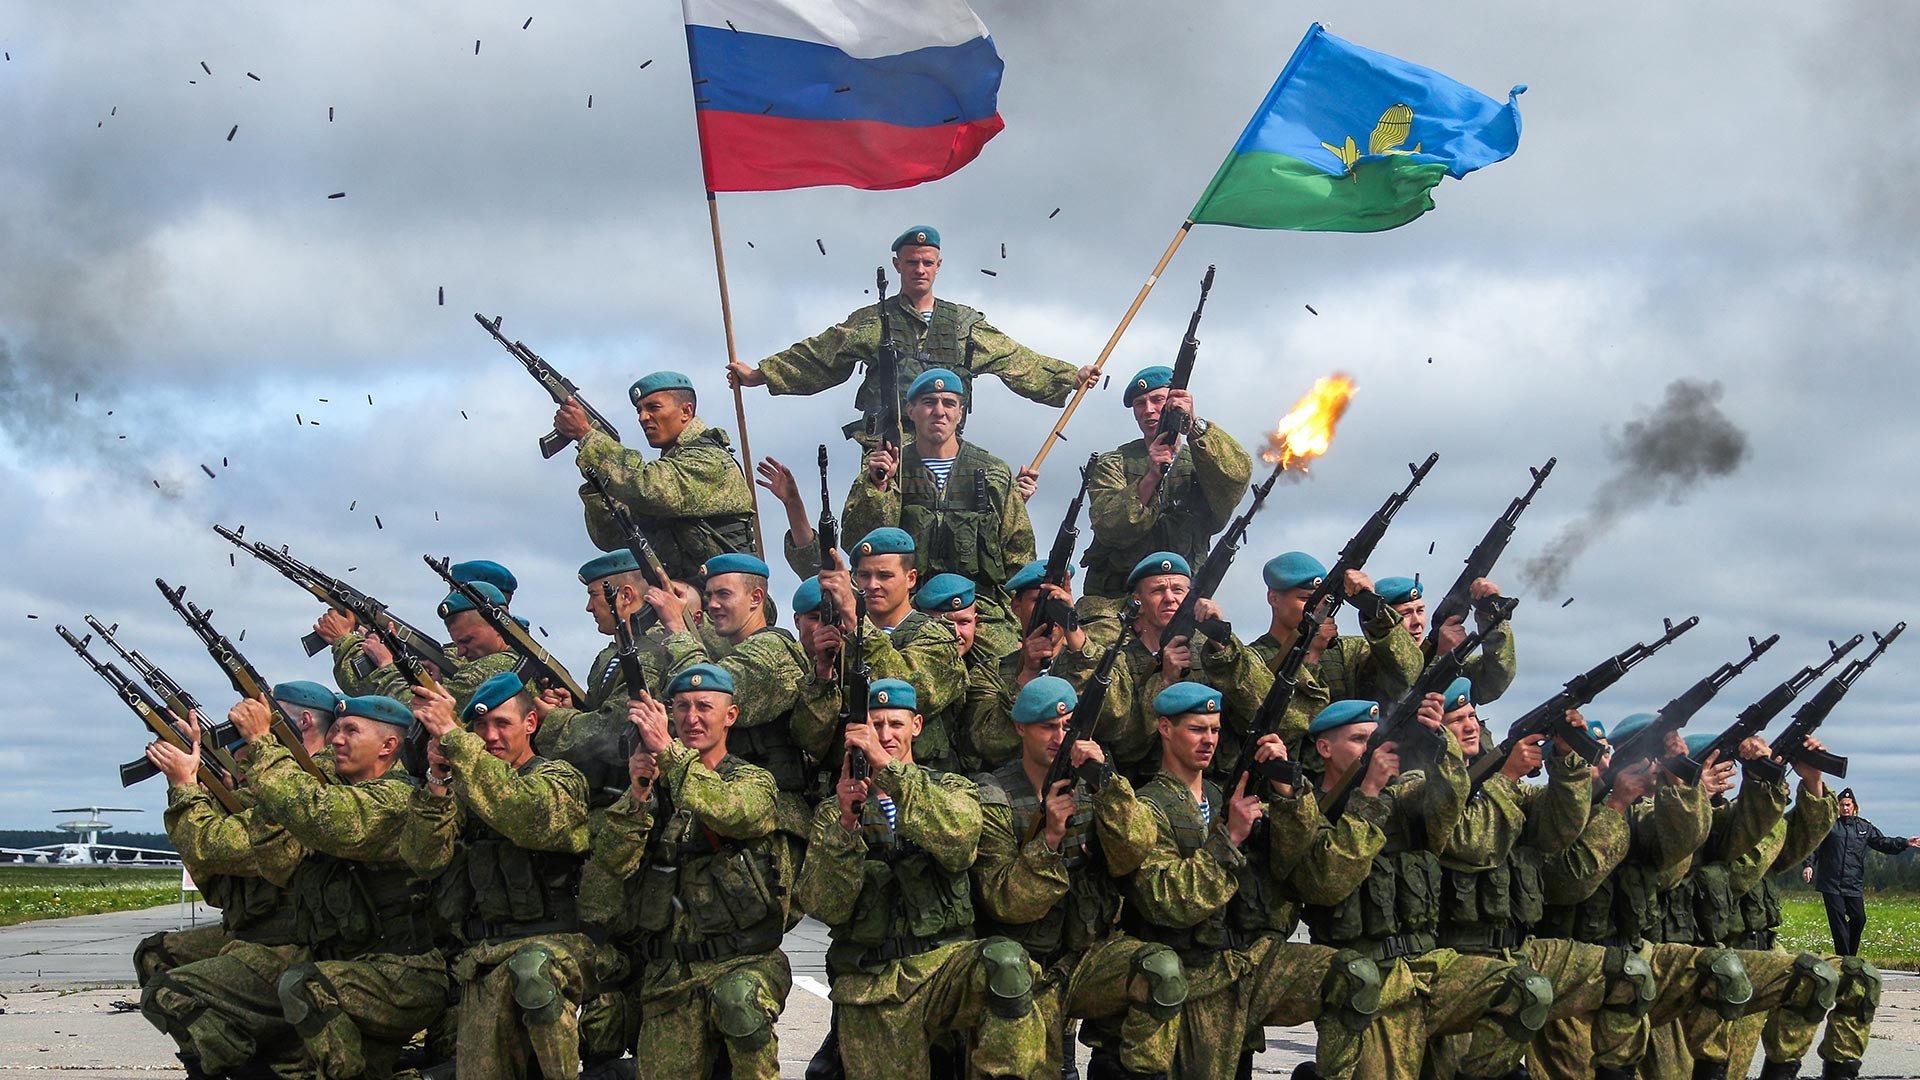 Pripadnici 98. divizije desantno-padobranskih snaga za vrijeme vojno-patriotskog festivala "Otvoreno nebo 2019" na aerodromu Severni.